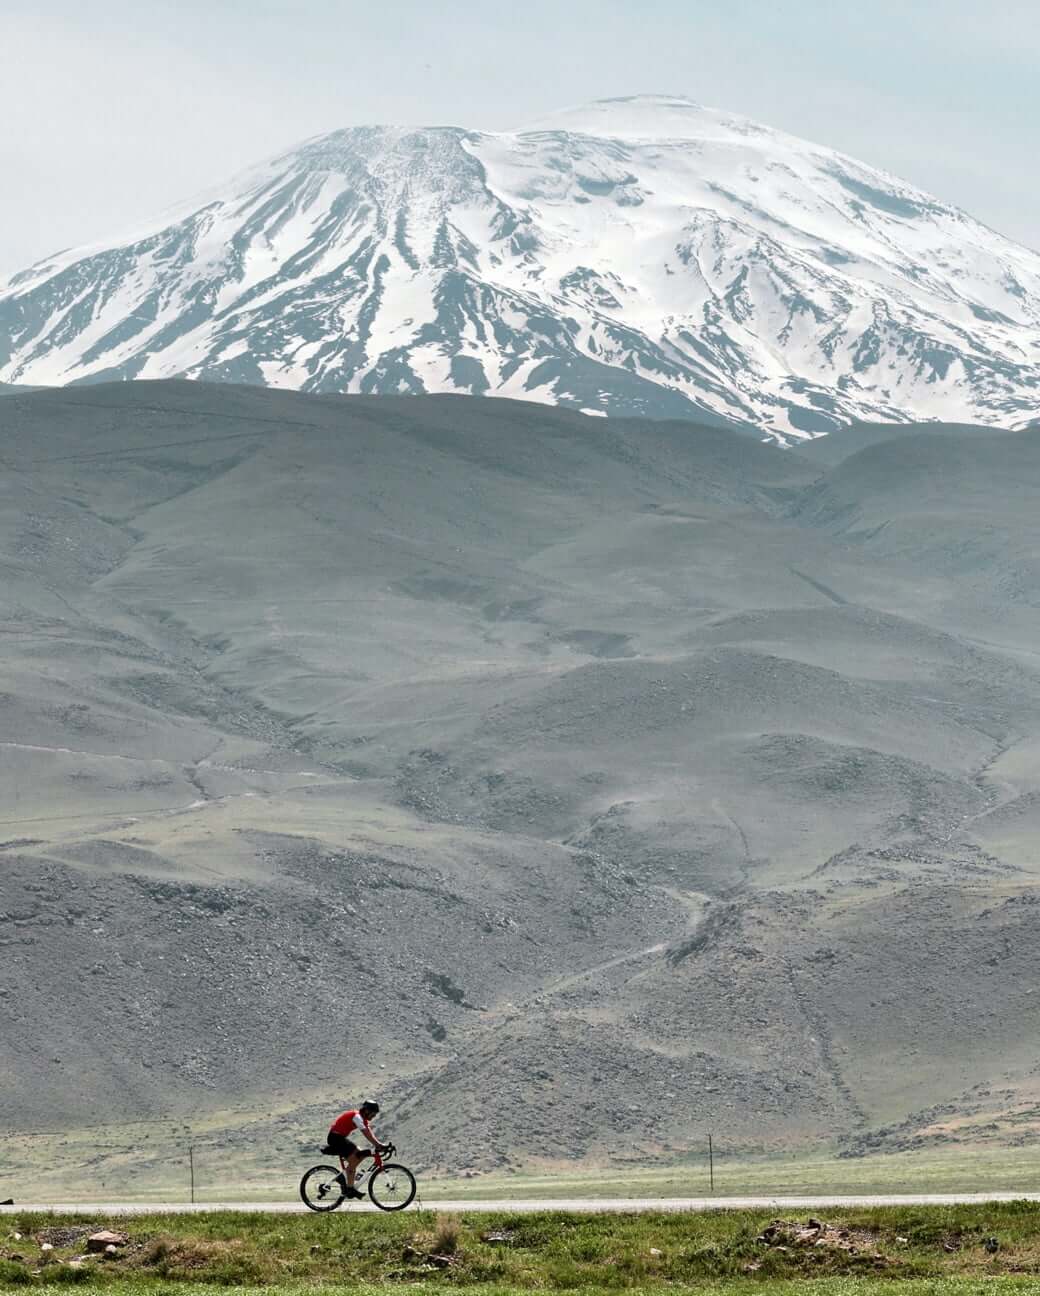 From zero to Ararat